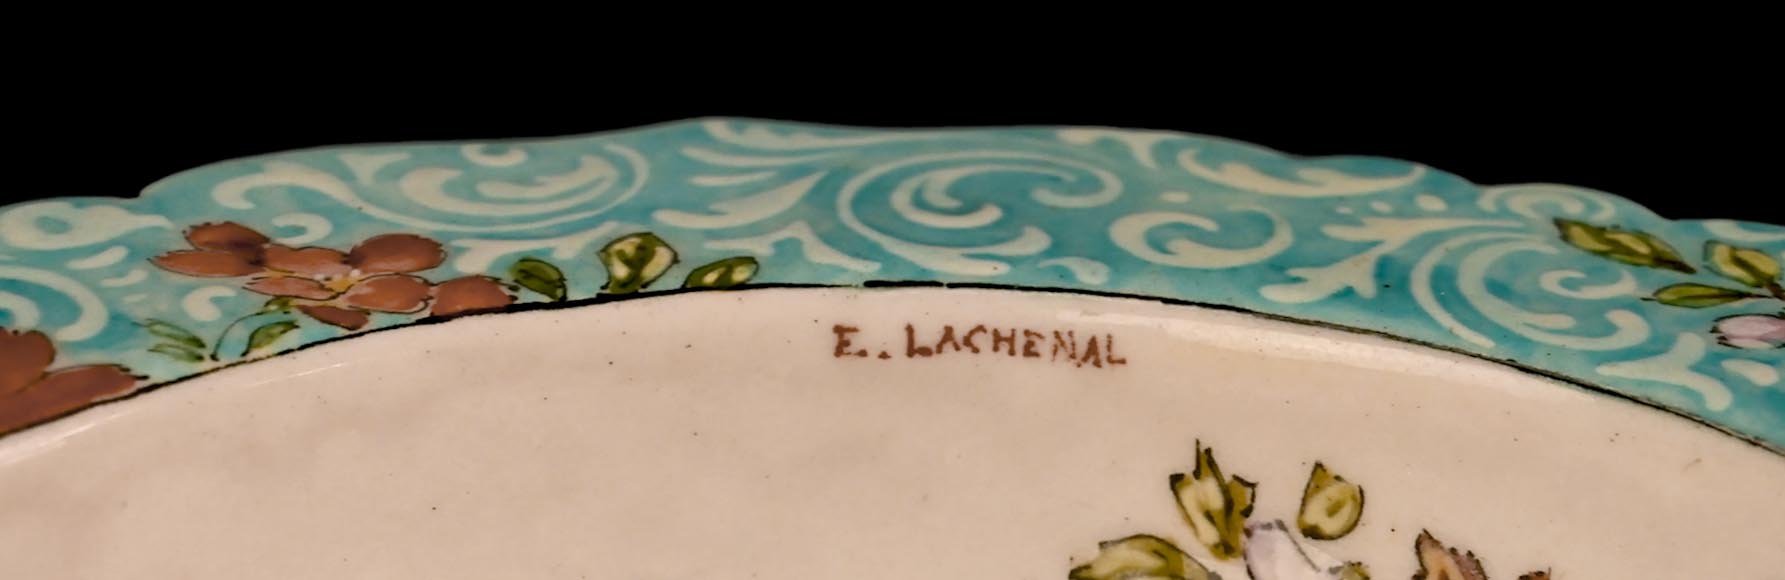 Edmond LACHENAL for L'ESCALIER DE CRISTAL, Earthenware bowl decorated with flowers, circa 1890-7